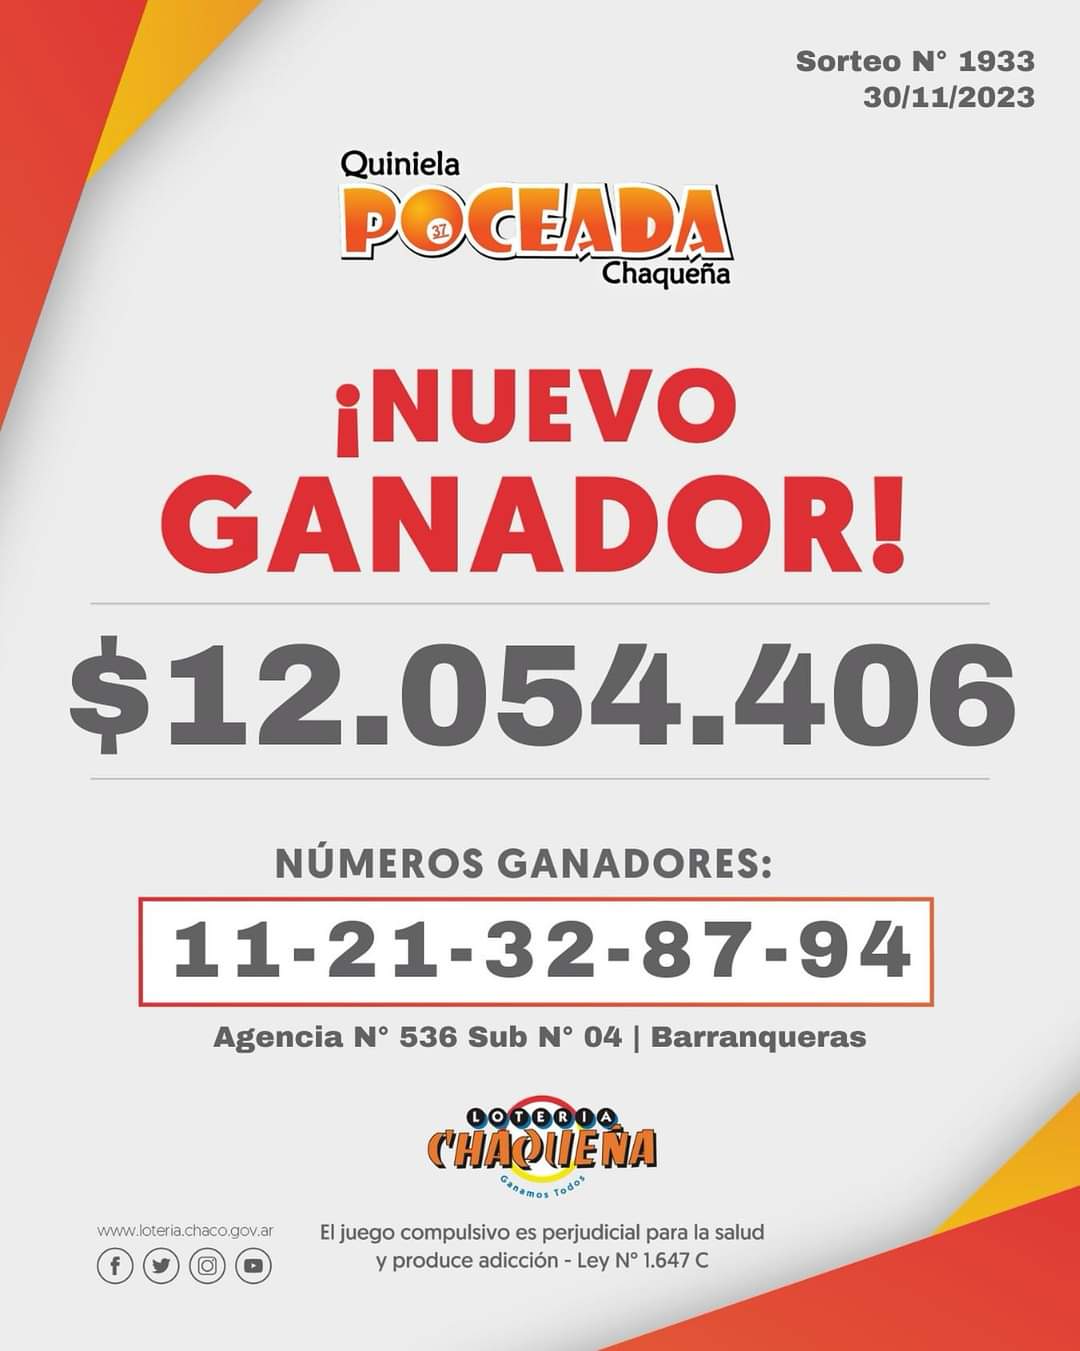 Poceada Chaqueña: un apostador se llevó más de $12.000.000